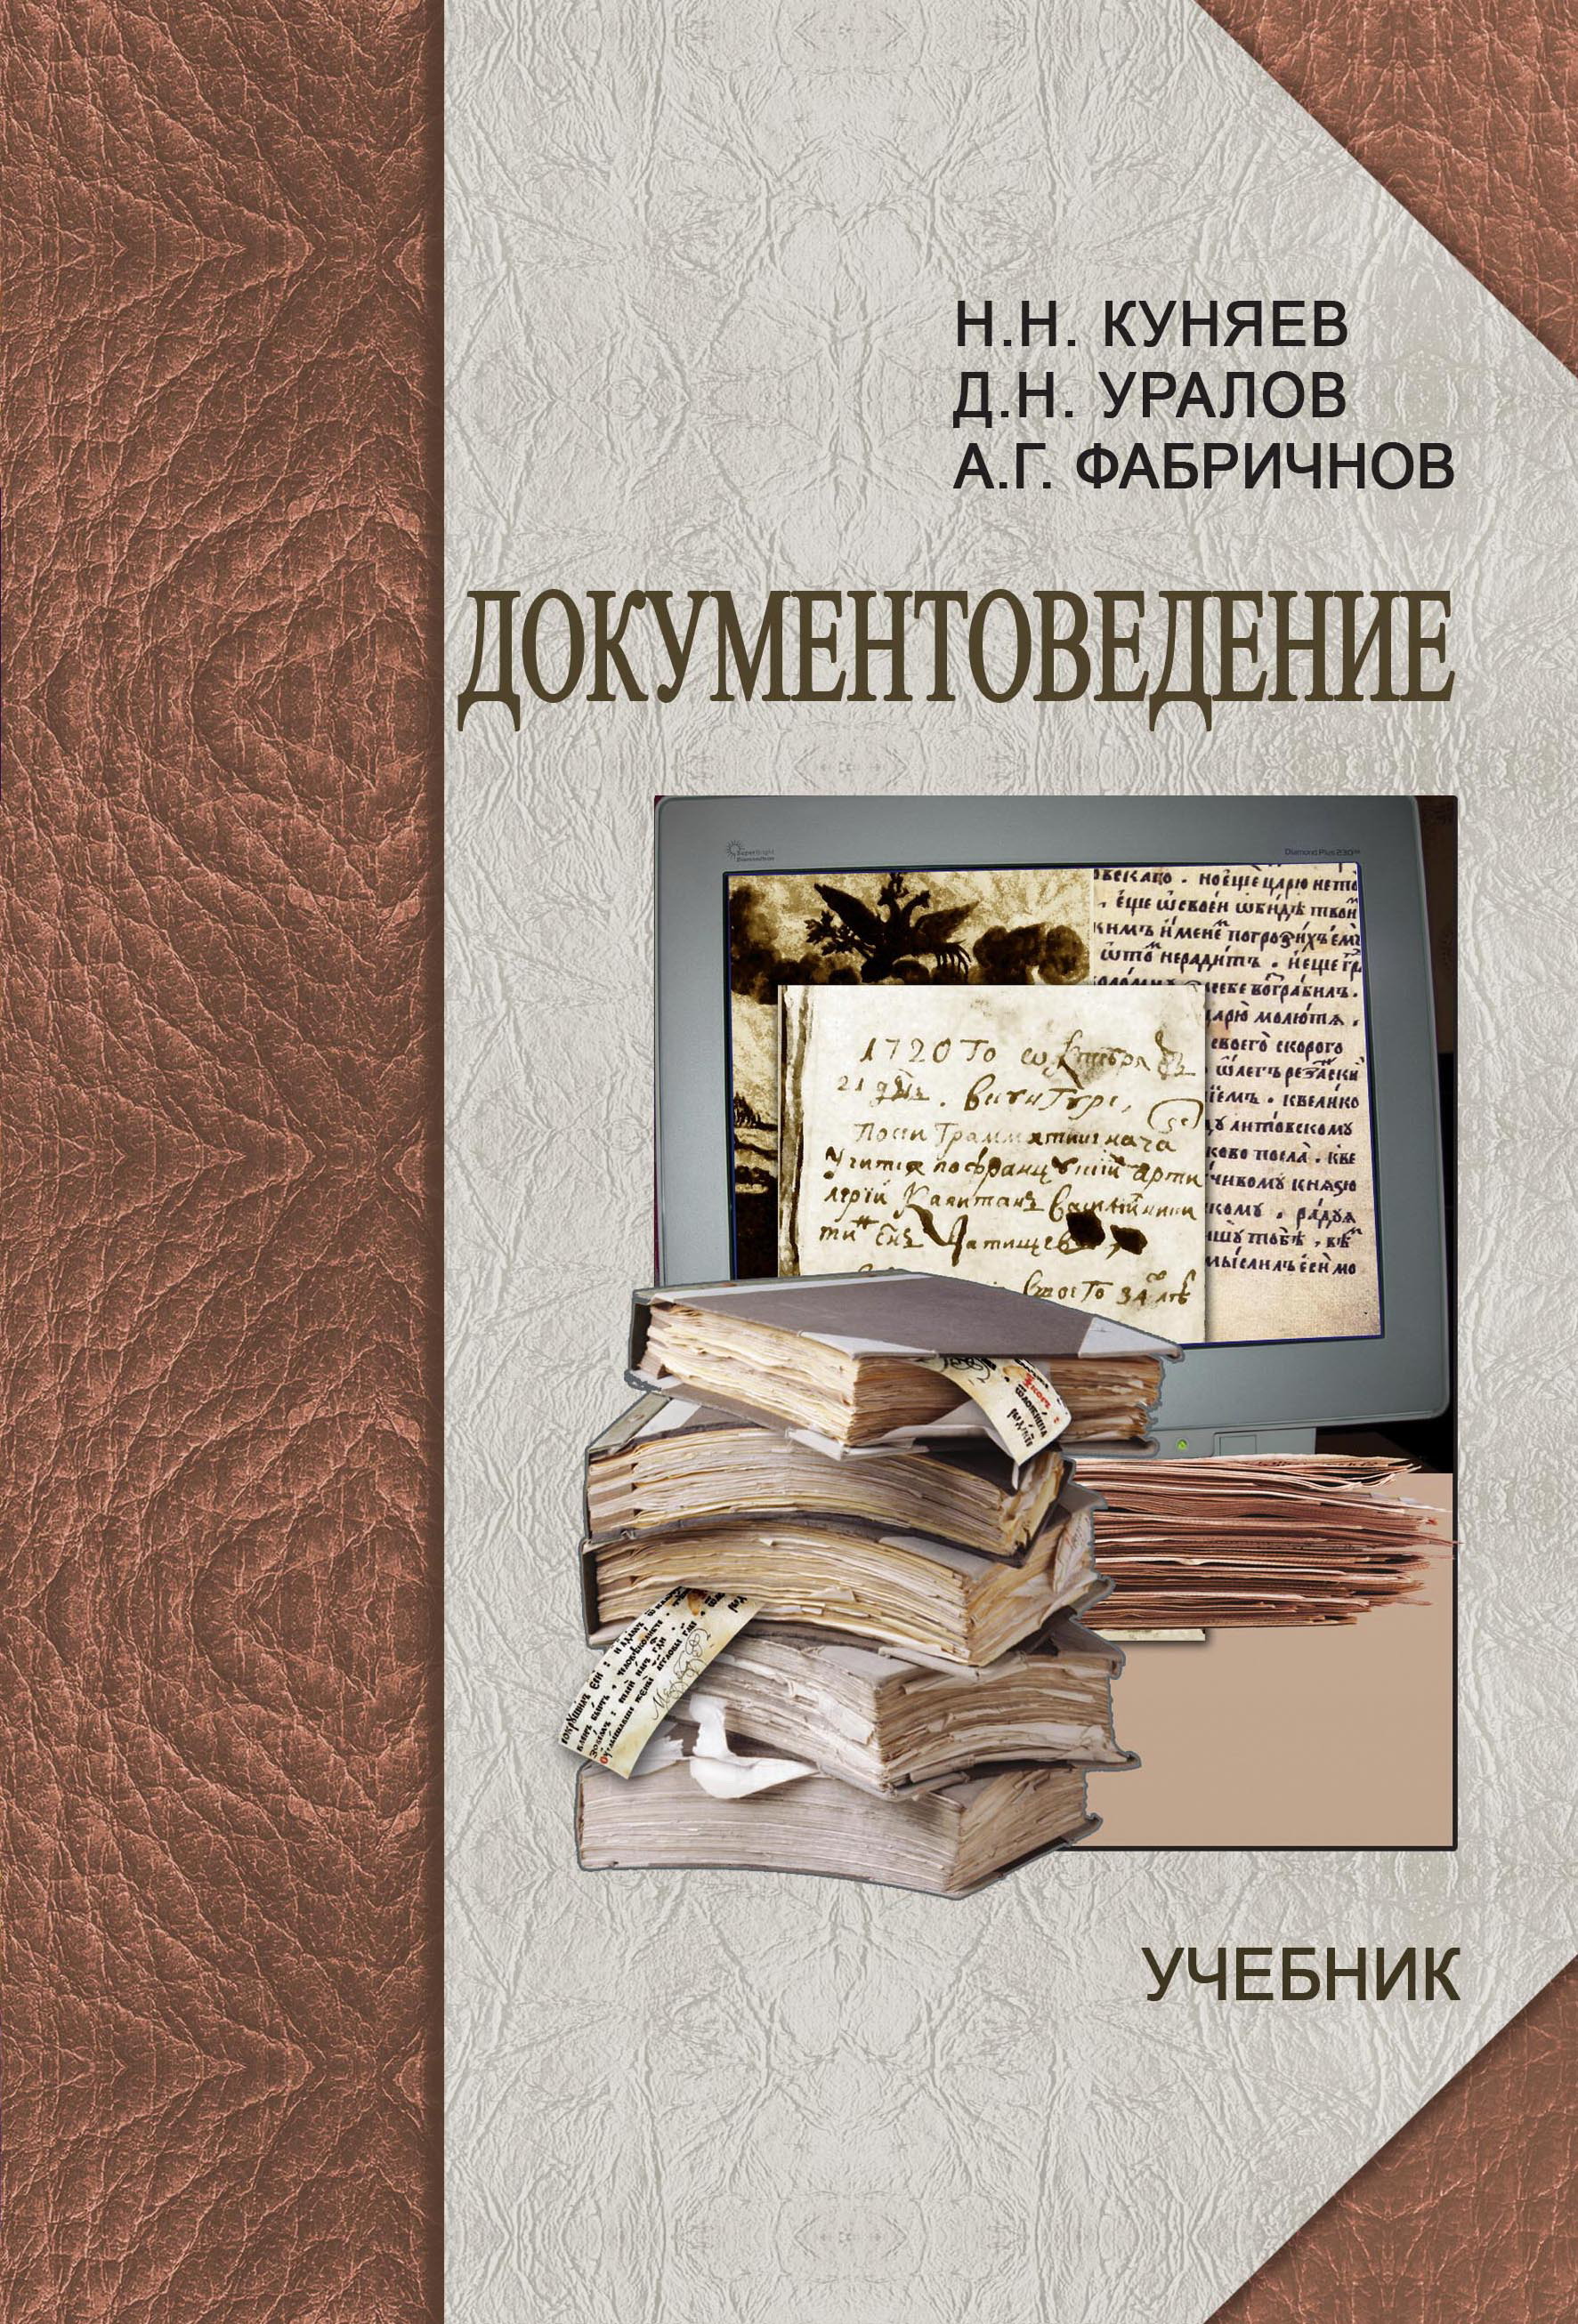 Куняев Н. Н. Документоведение: учебник